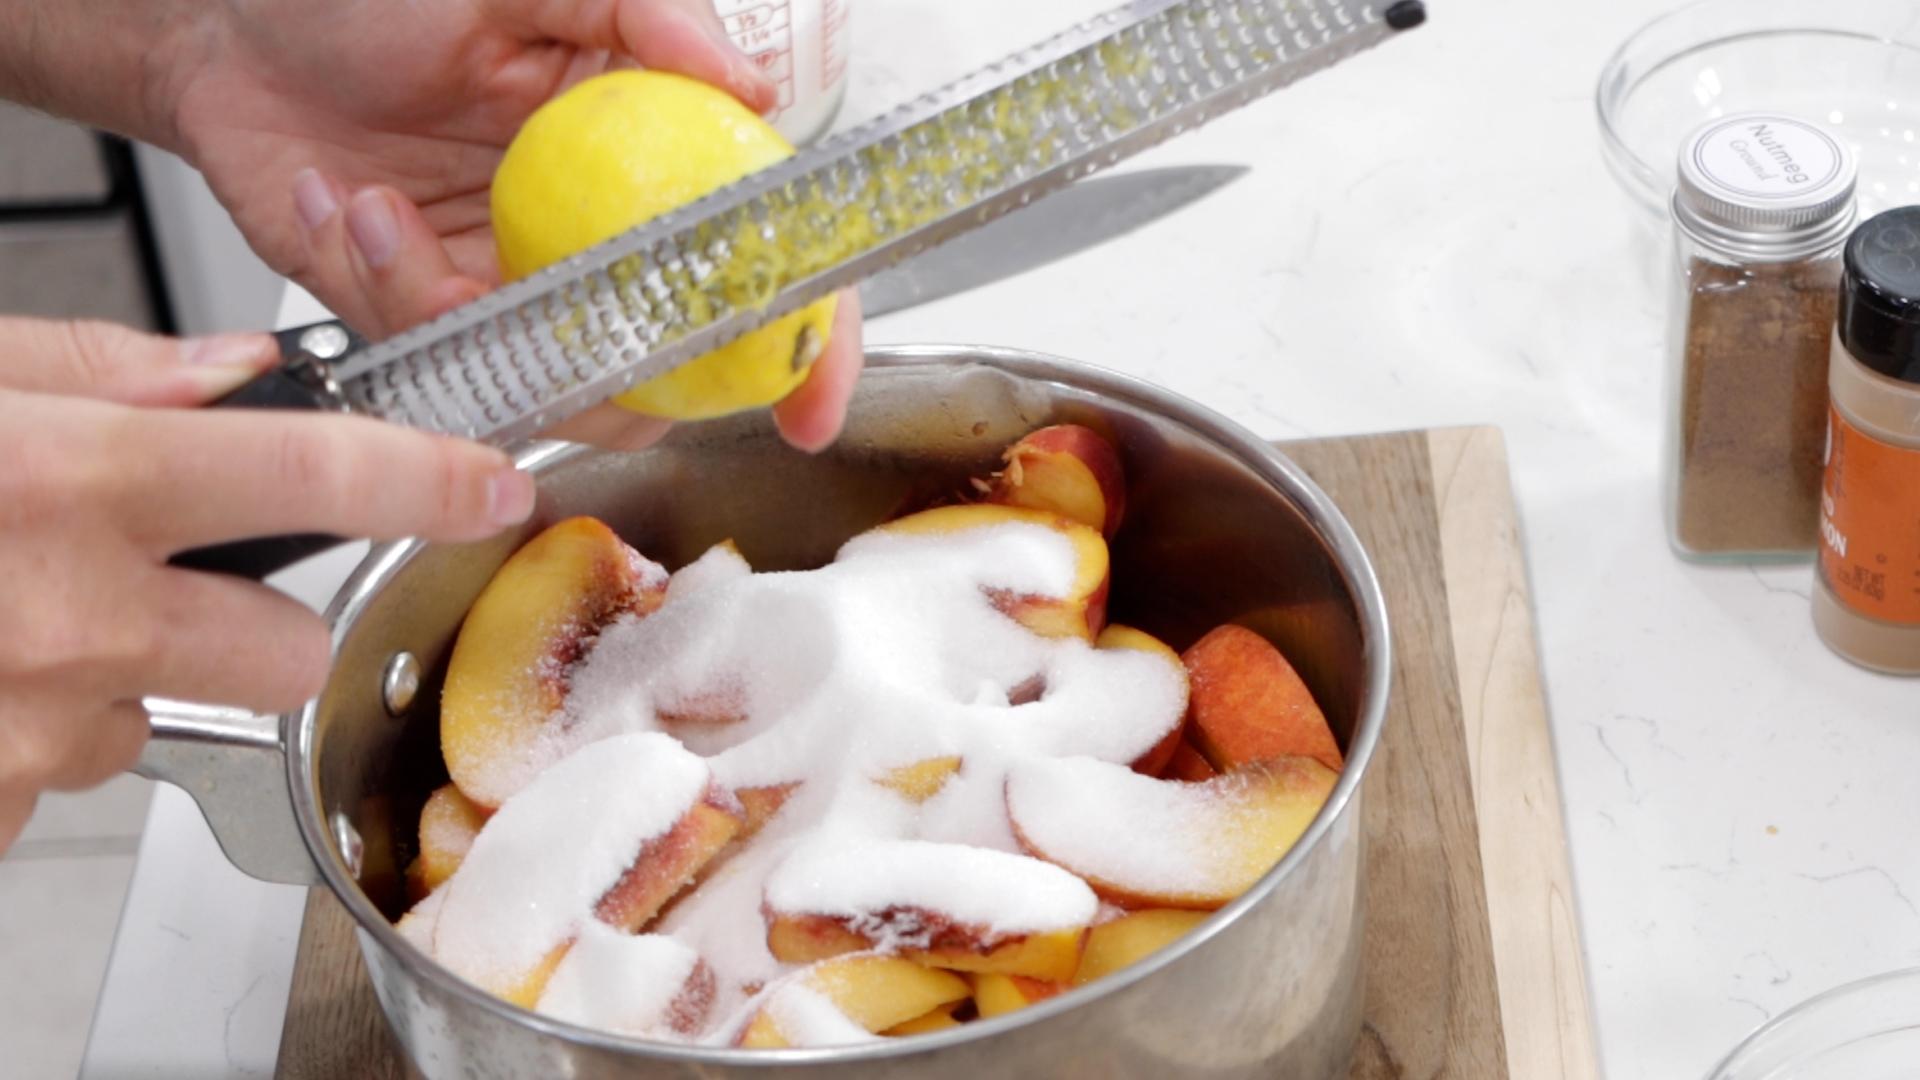 How to Make Peach Cobbler From Scratch Homemade Peach Cobbler Recipe.00_01_51_06.Still003.jpg